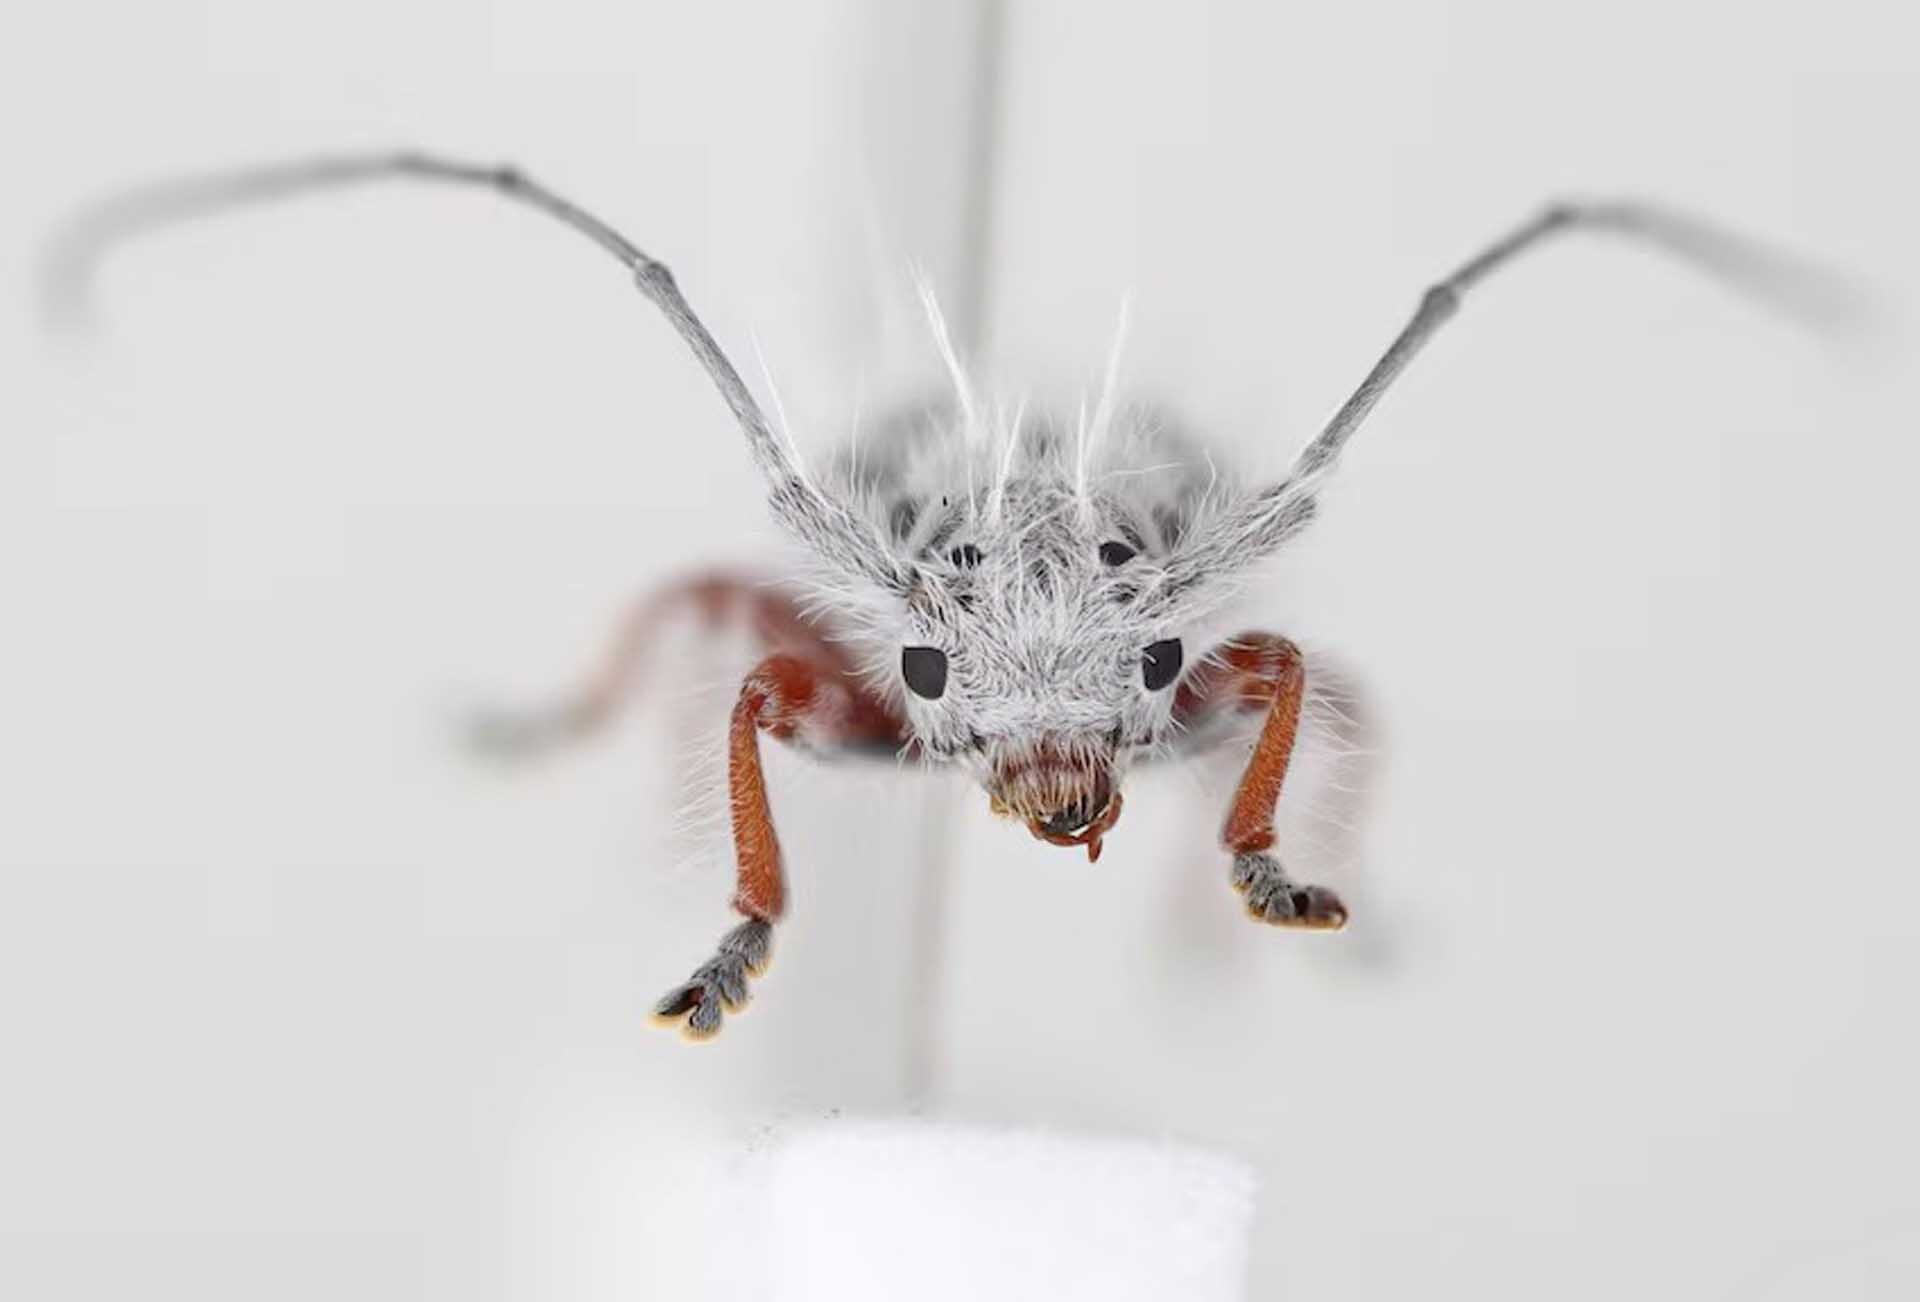 ออสเตรเลียพบ “ด้วงพังก์” แมลงพันธุ์ใหม่ของโลก-หน้าตาสุดแปลกเหมือน “ขี้นก”